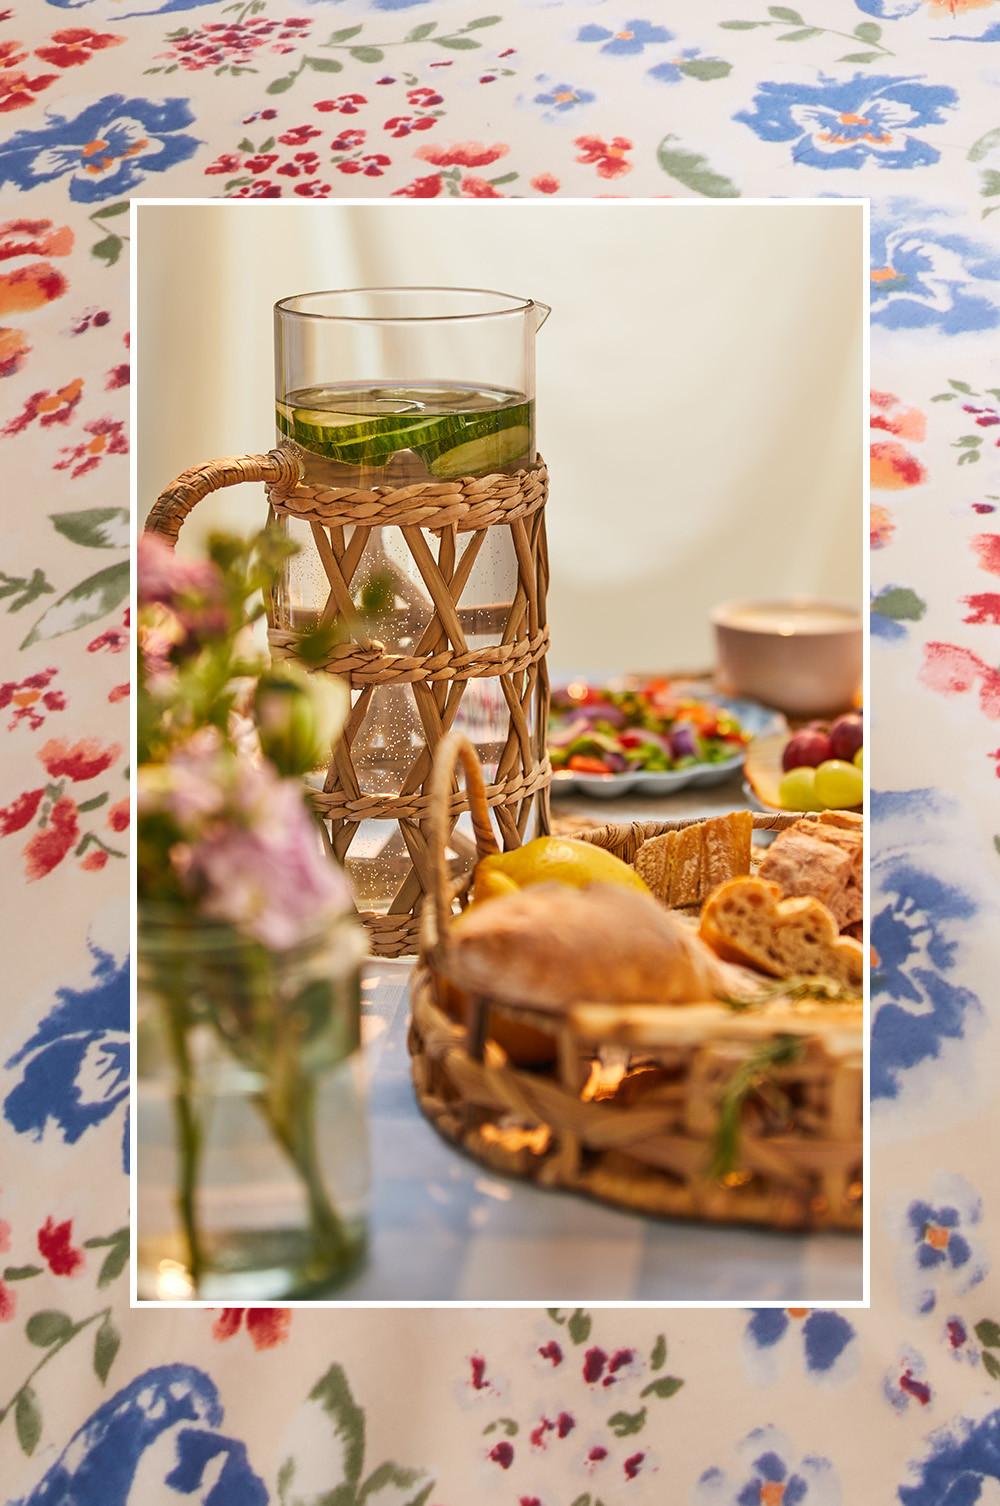 Présentation de table avec nappe à motif vichy bleu, carafes et paniers en rotin